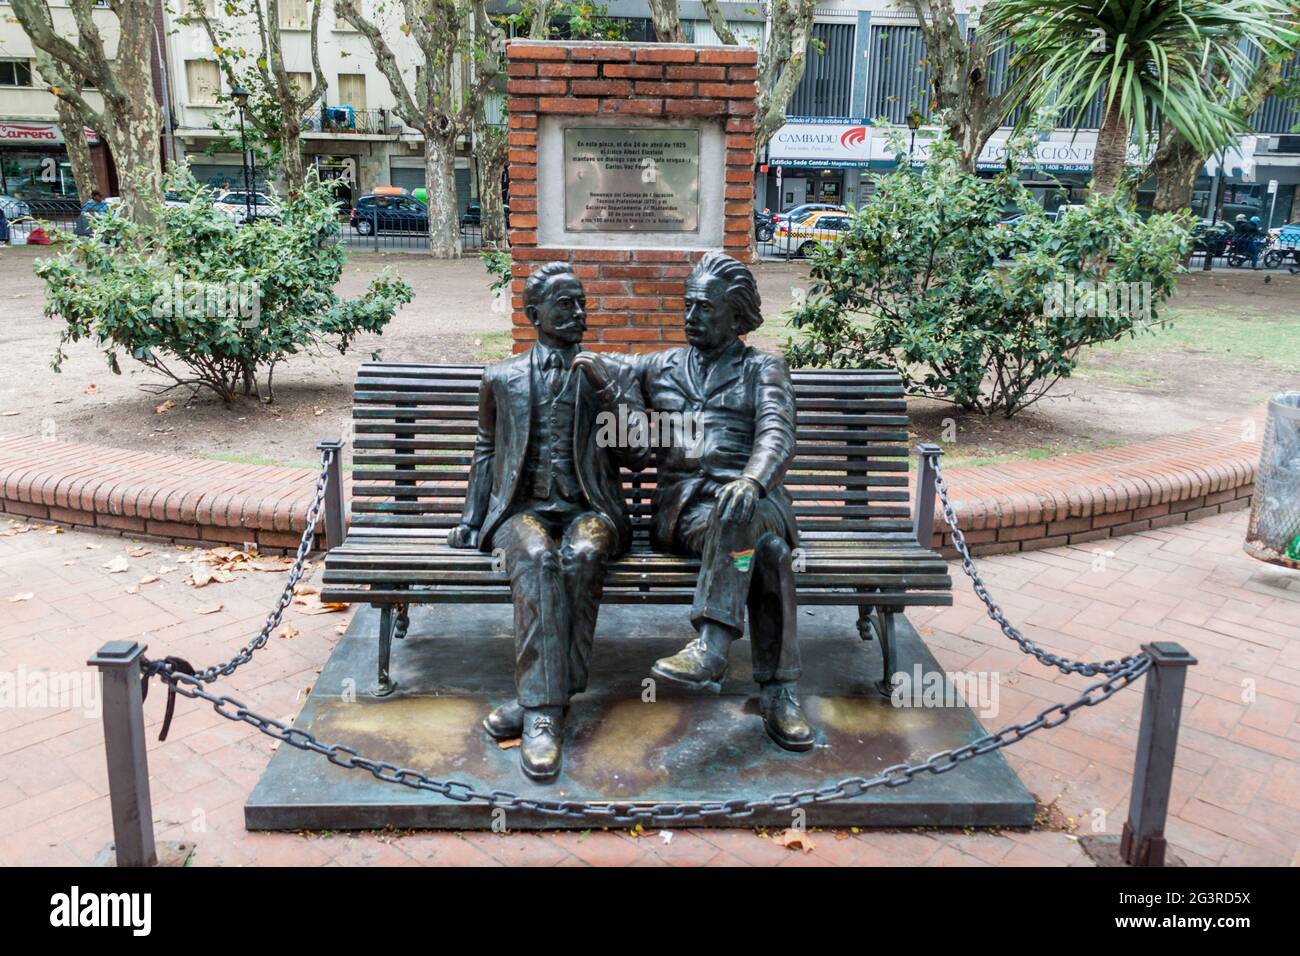 MONTEVIDEO, URUGUAY - 19. FEBRUAR 2015: Denkmal der Begegnung von Carlos Vaz Ferreira und Albert Einstein auf dem Platz Plaza de los Treinta y Tres in Montevideo Stockfoto